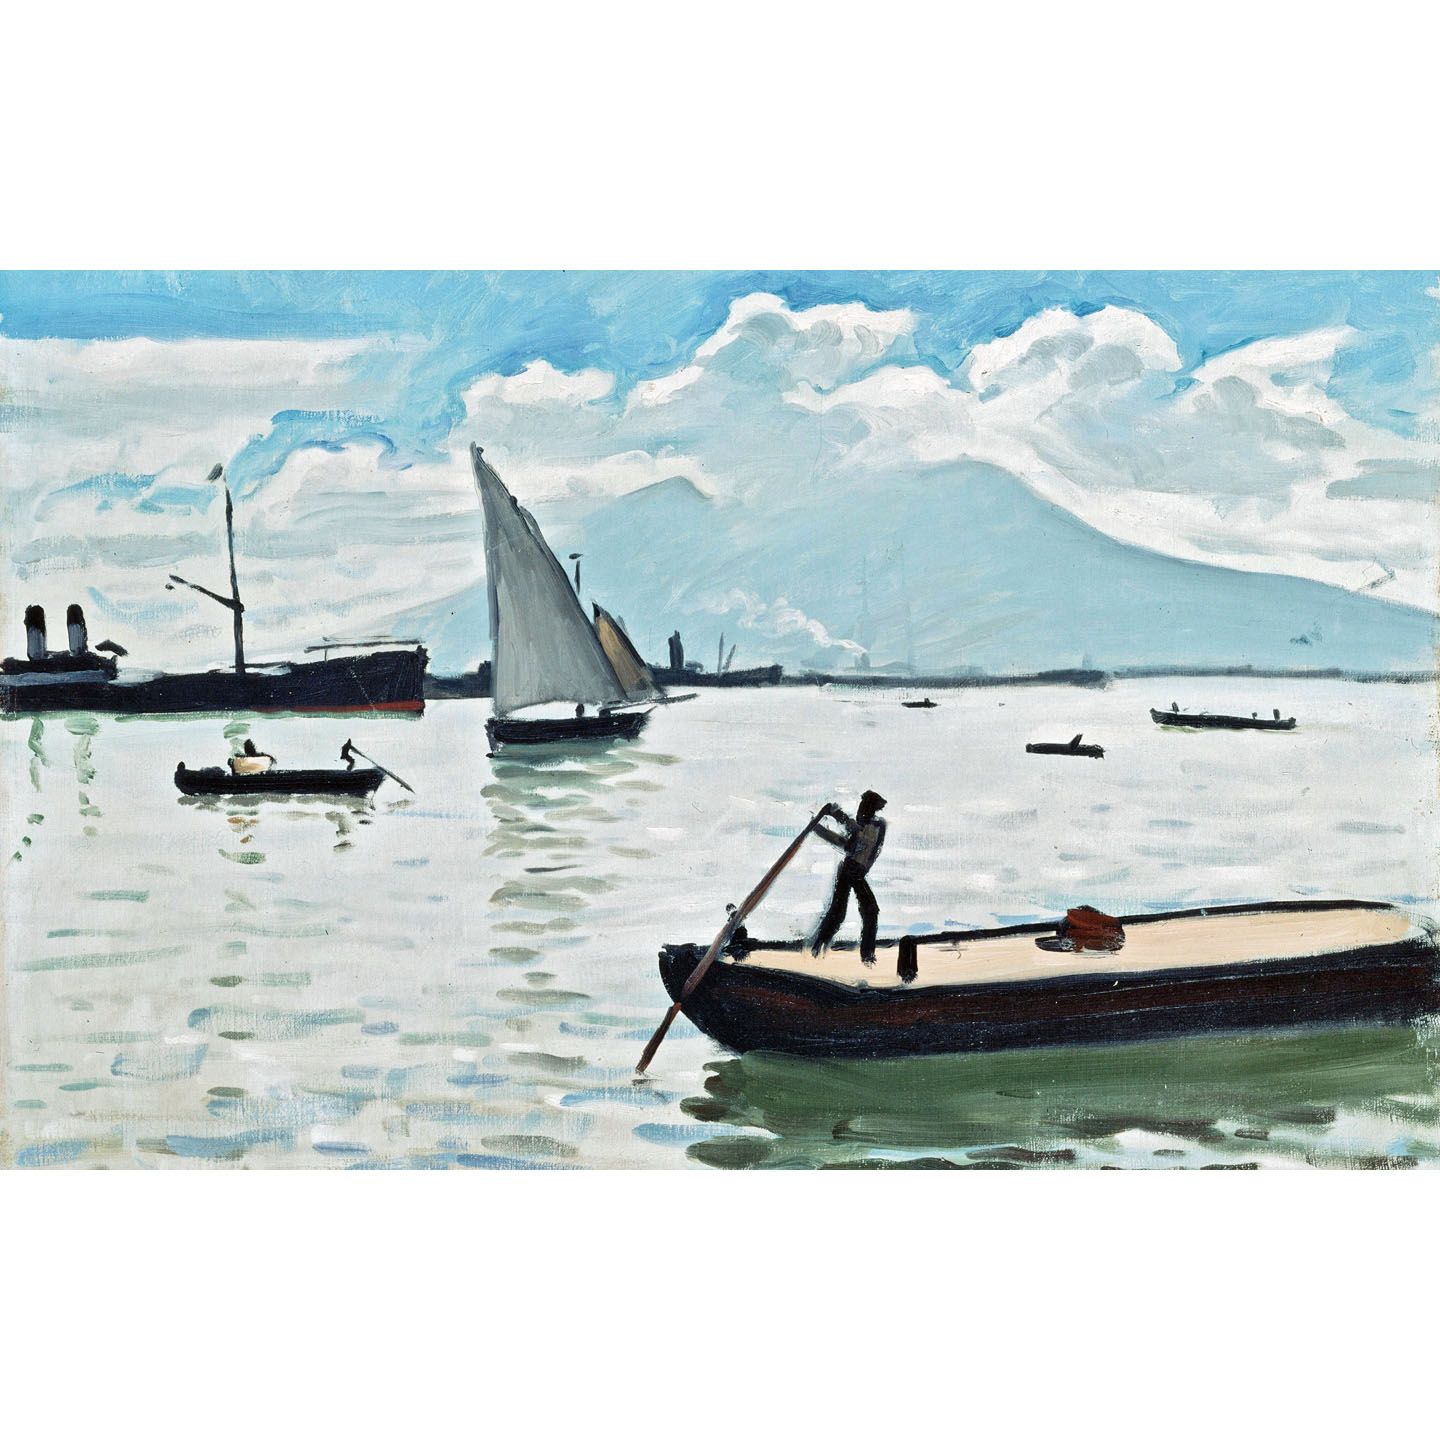 Альбер Марке. Неаполитанский залив. 1909. Эрмитаж